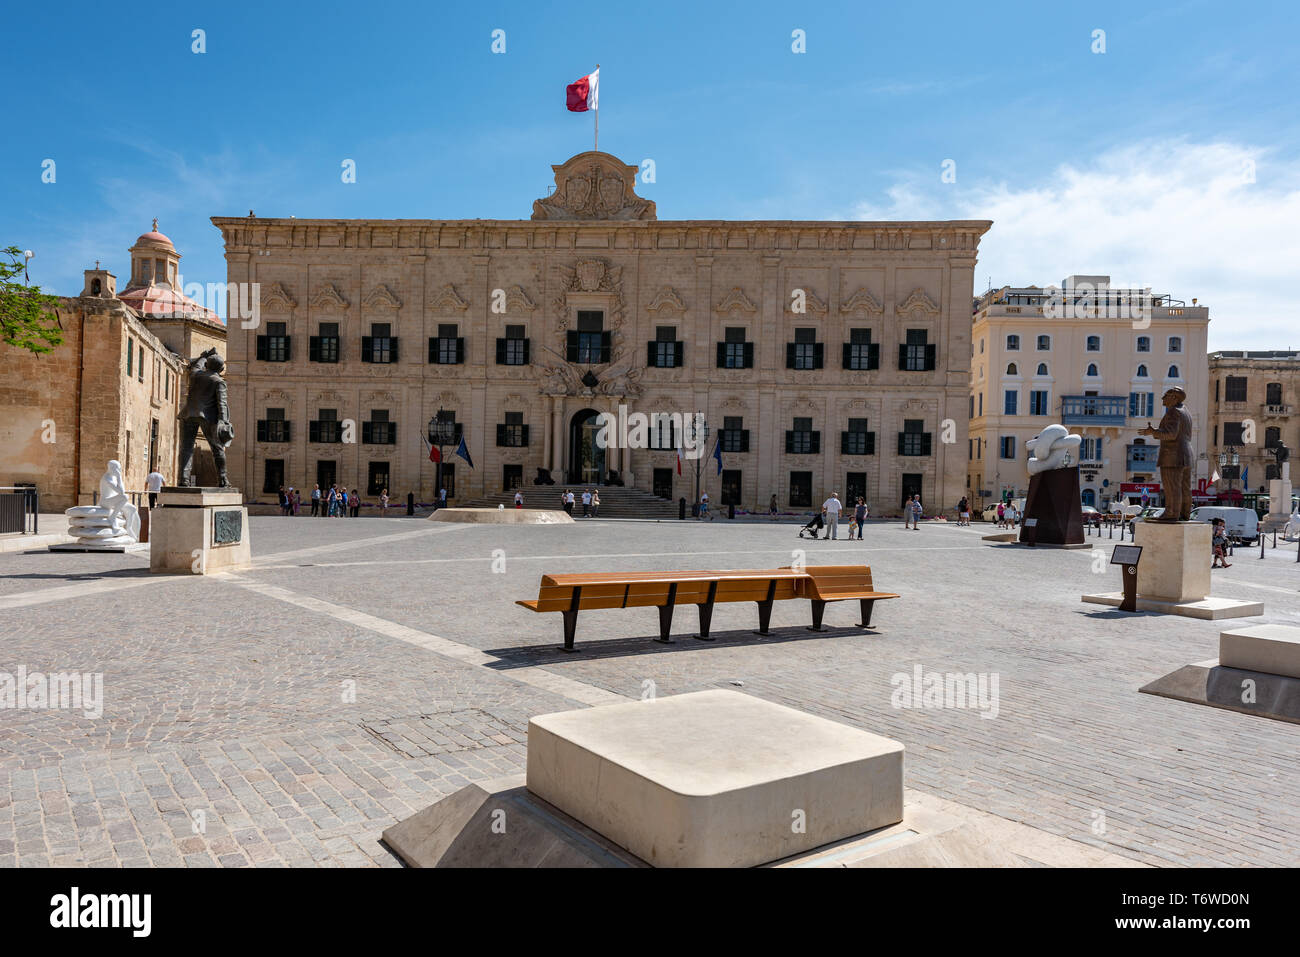 La facciata barocca dell'Auberge de Castille si affaccia su Piazza della Castiglia della Valletta con le sue statue di Manwel Dimech e Dom Mintoff. Foto Stock